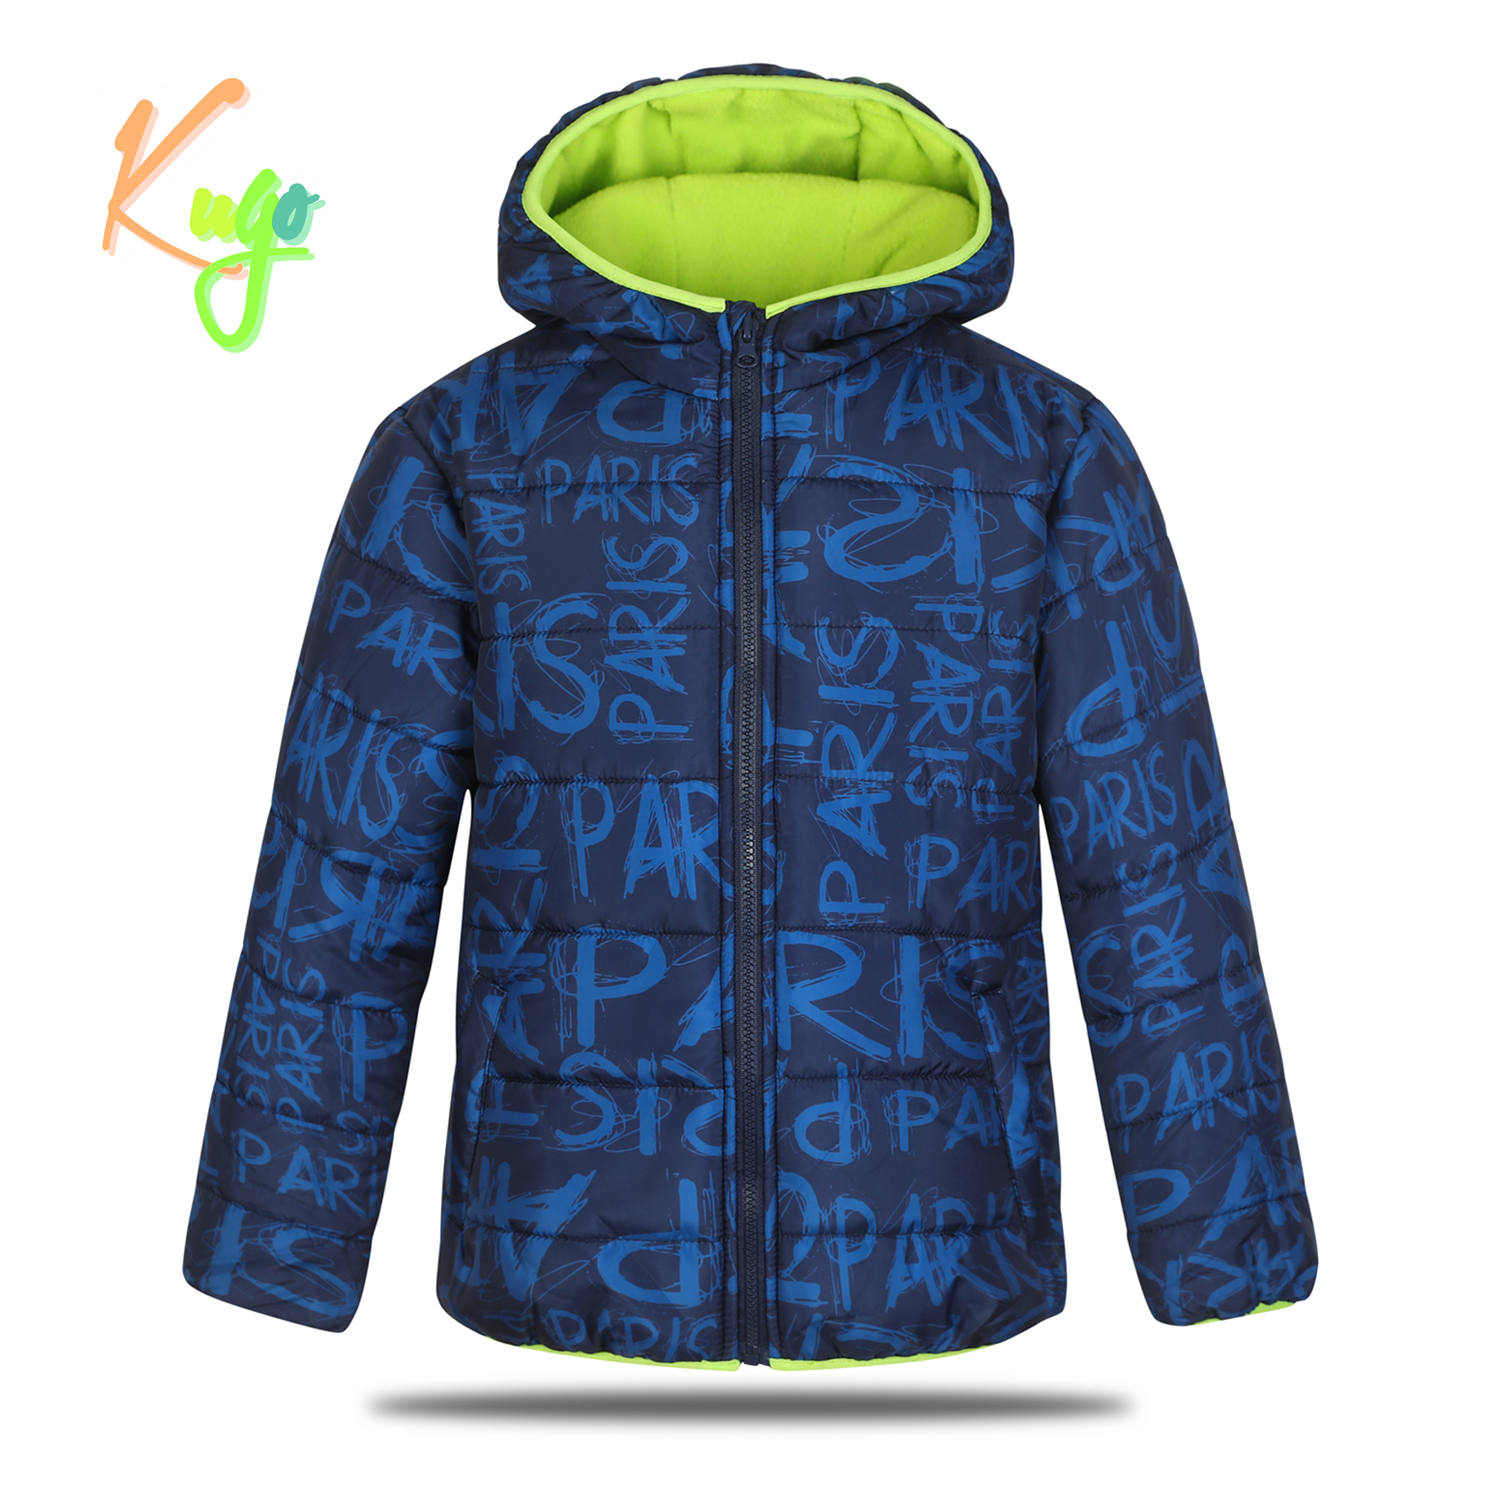 Chlapecká zimní bunda - KUGO FB0316, tmavě modrá Barva: Modrá tmavě, Velikost: 158